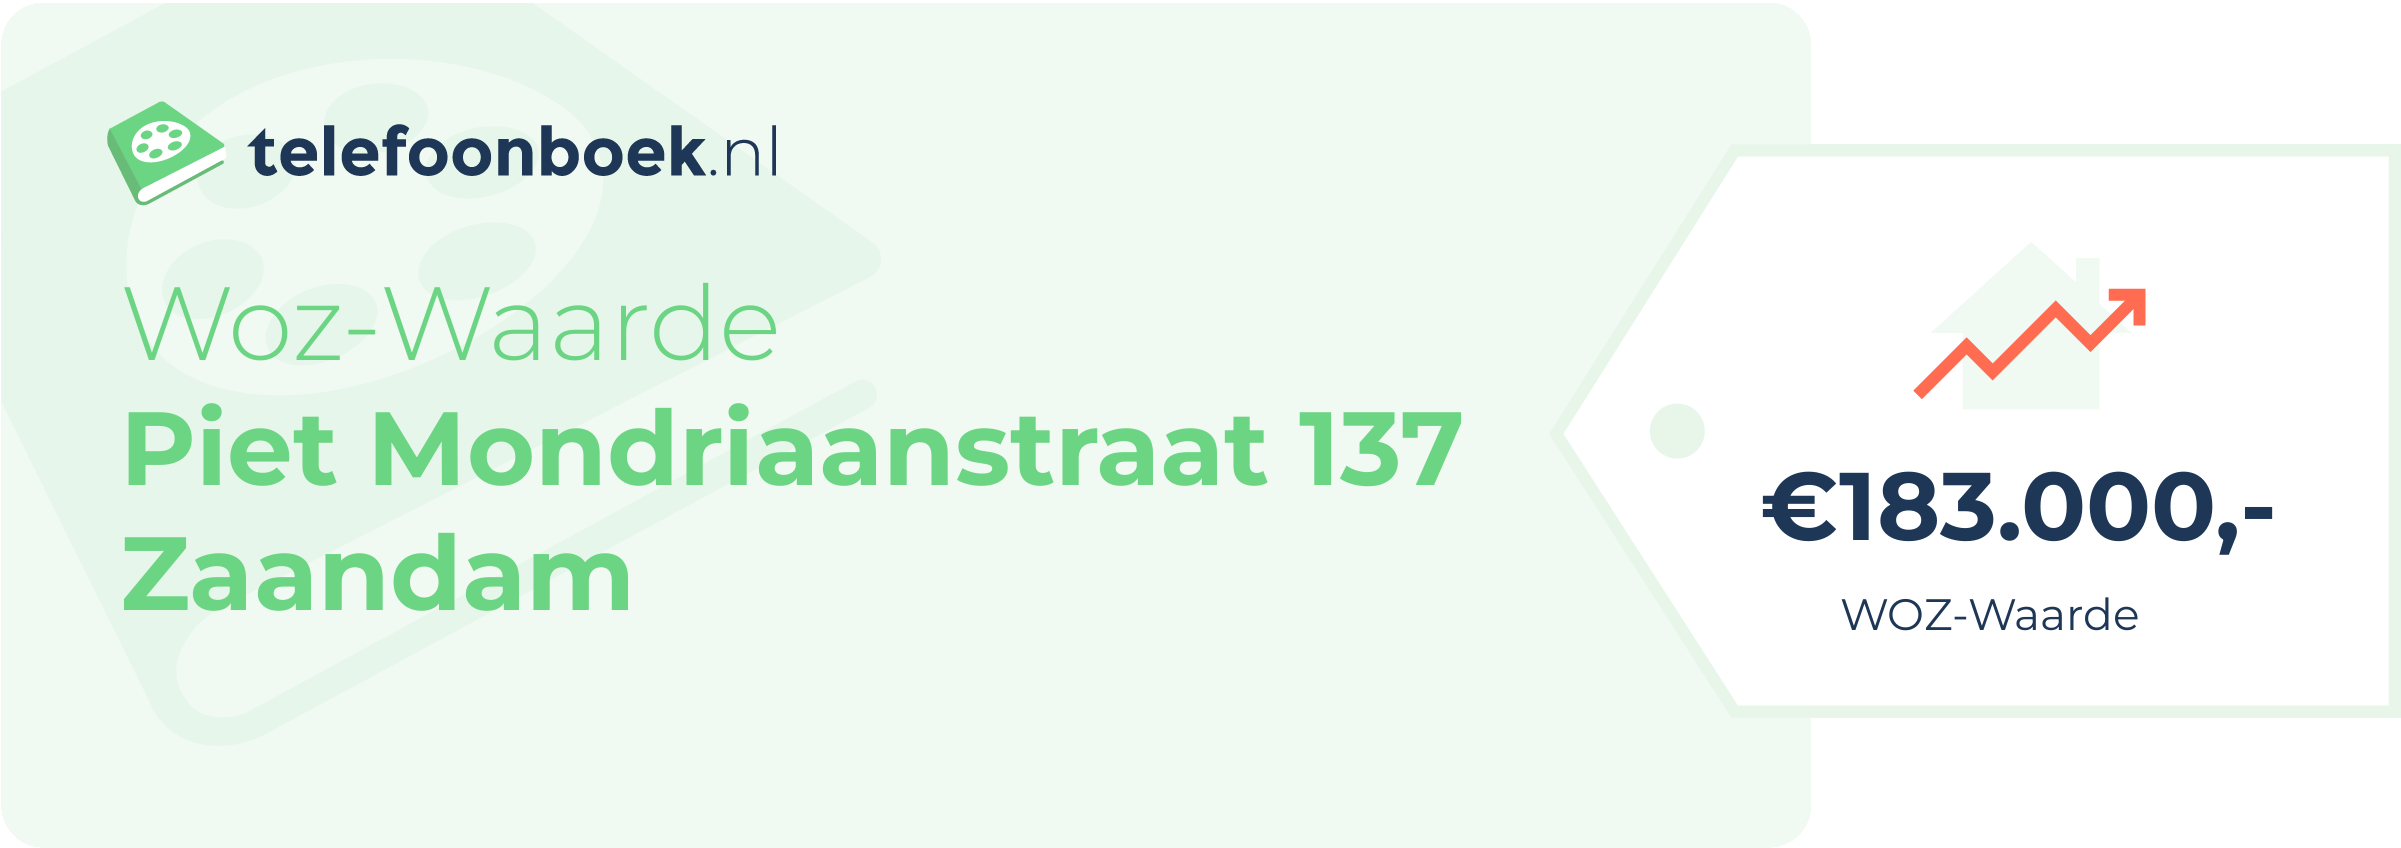 WOZ-waarde Piet Mondriaanstraat 137 Zaandam